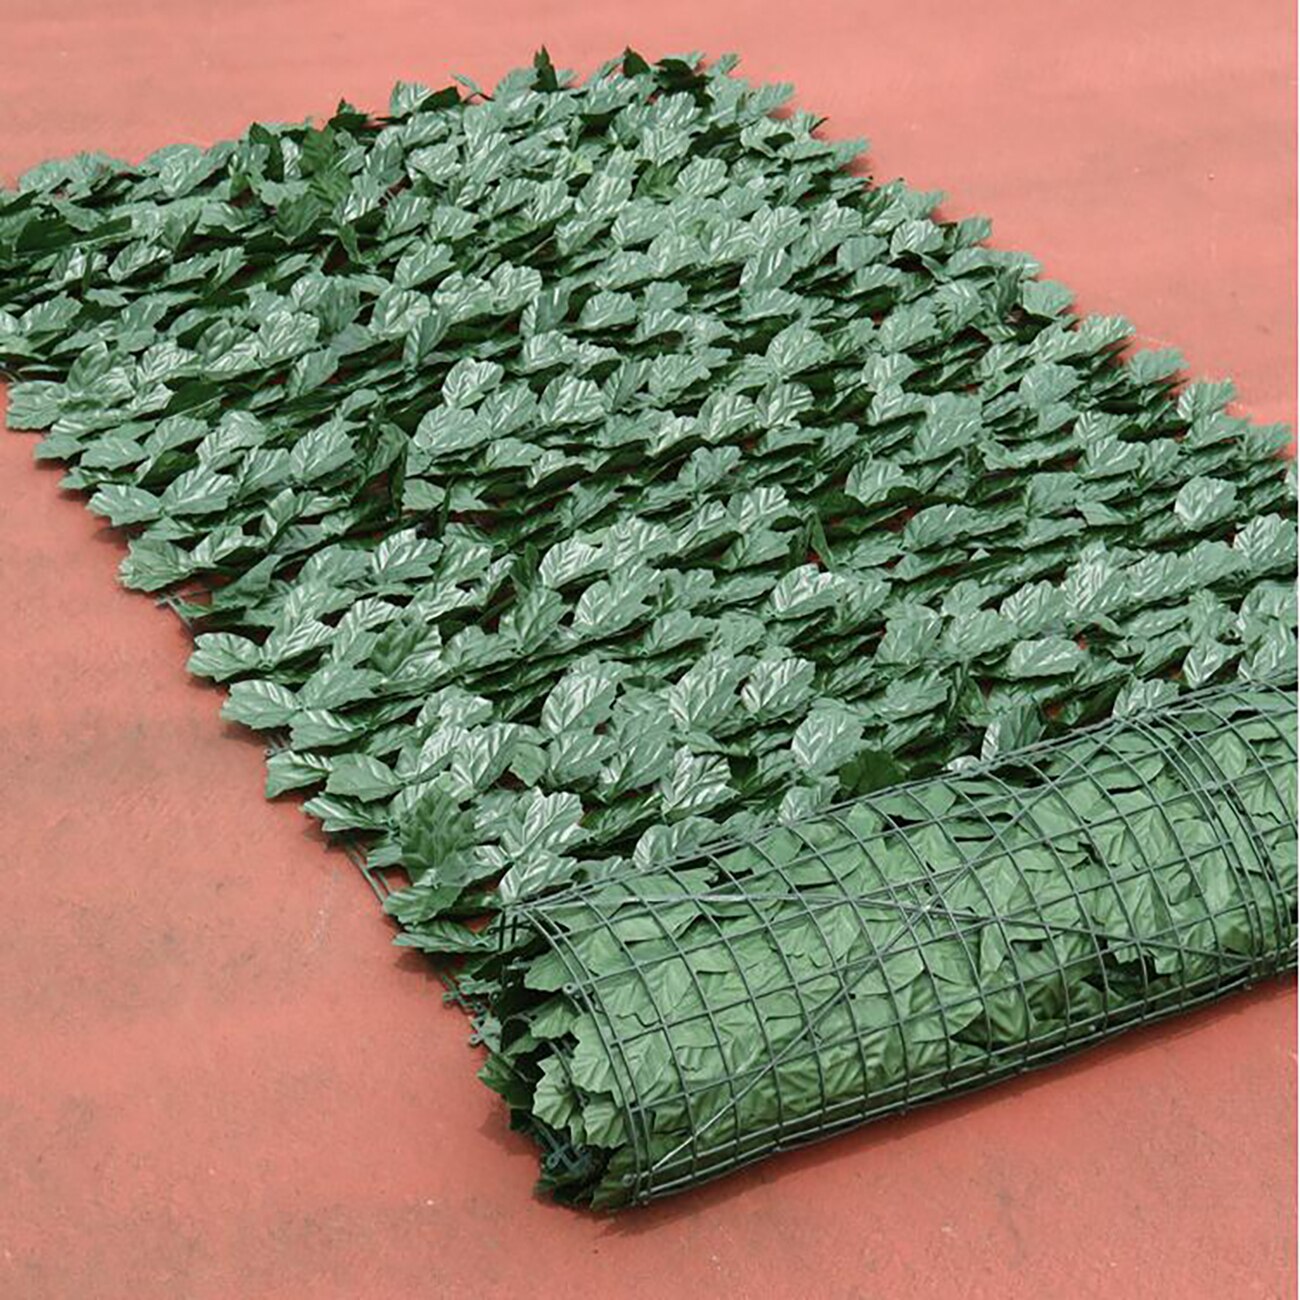 0.5*1m kunstige blade hæk hegn plast kunstige hængende vedbend diy væg altan indretning grønne blade haven baghave grønne: B